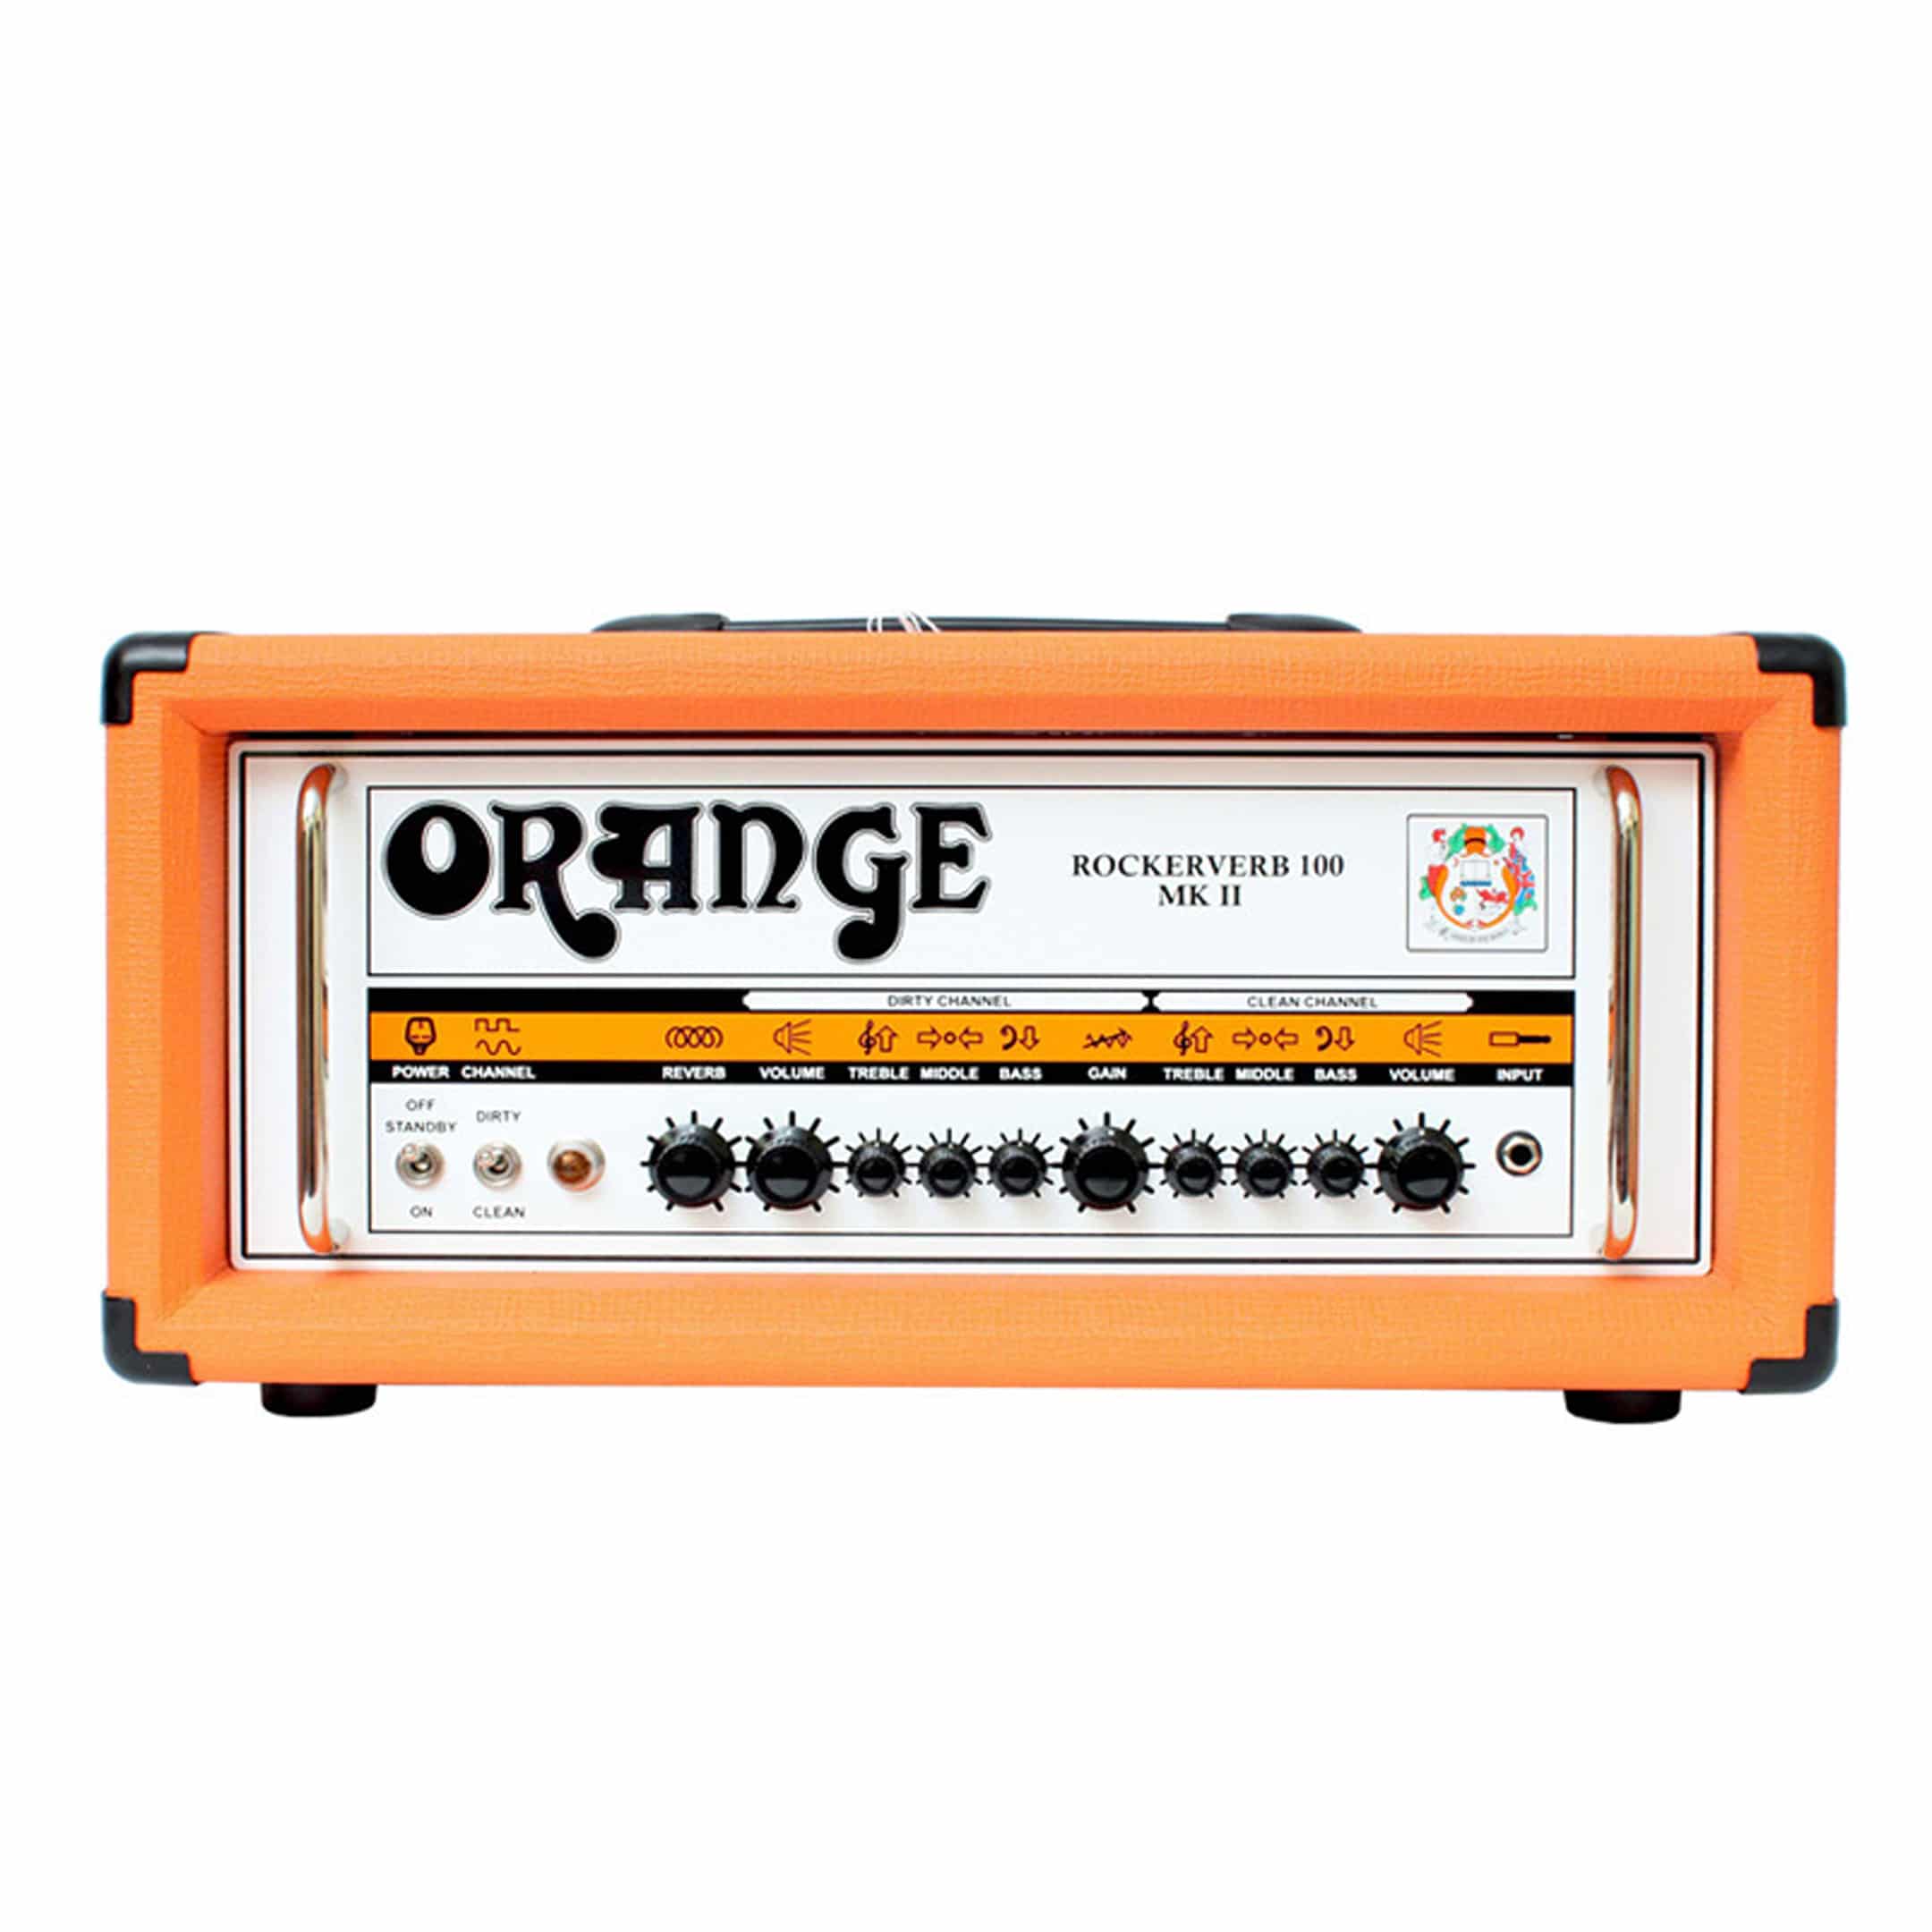 Head Amplifier 1/4 Ply Light Duty Economy ATA Case Fits Orange Rockerverb 100 Mk Ii 